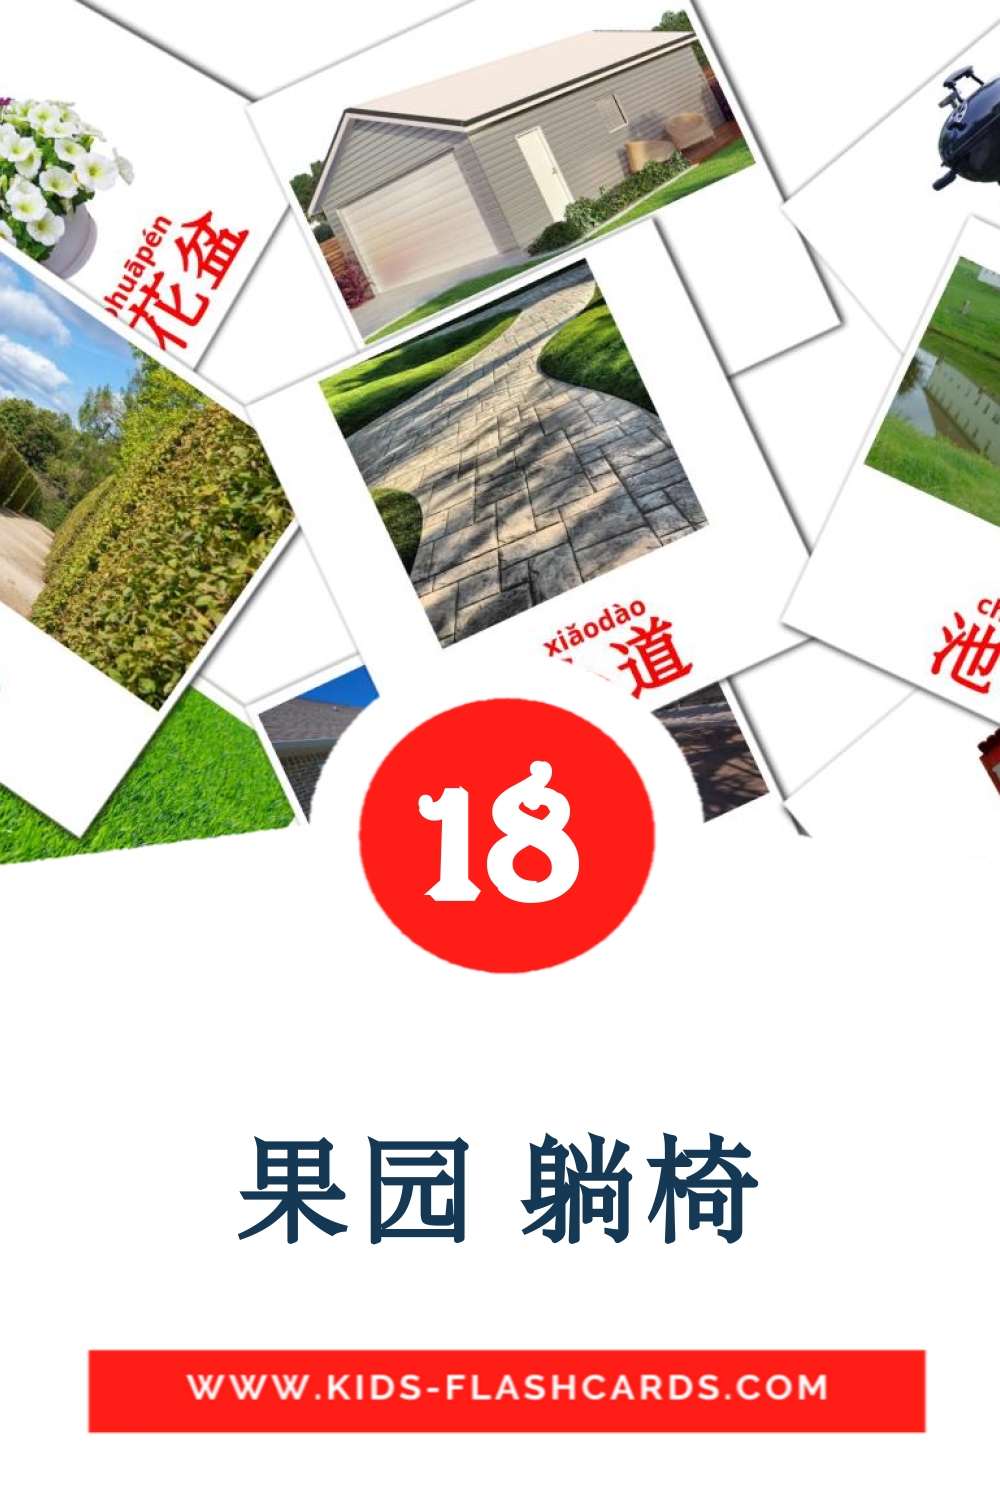 18 果园 躺椅 fotokaarten voor kleuters in het chinees(vereenvoudigd)